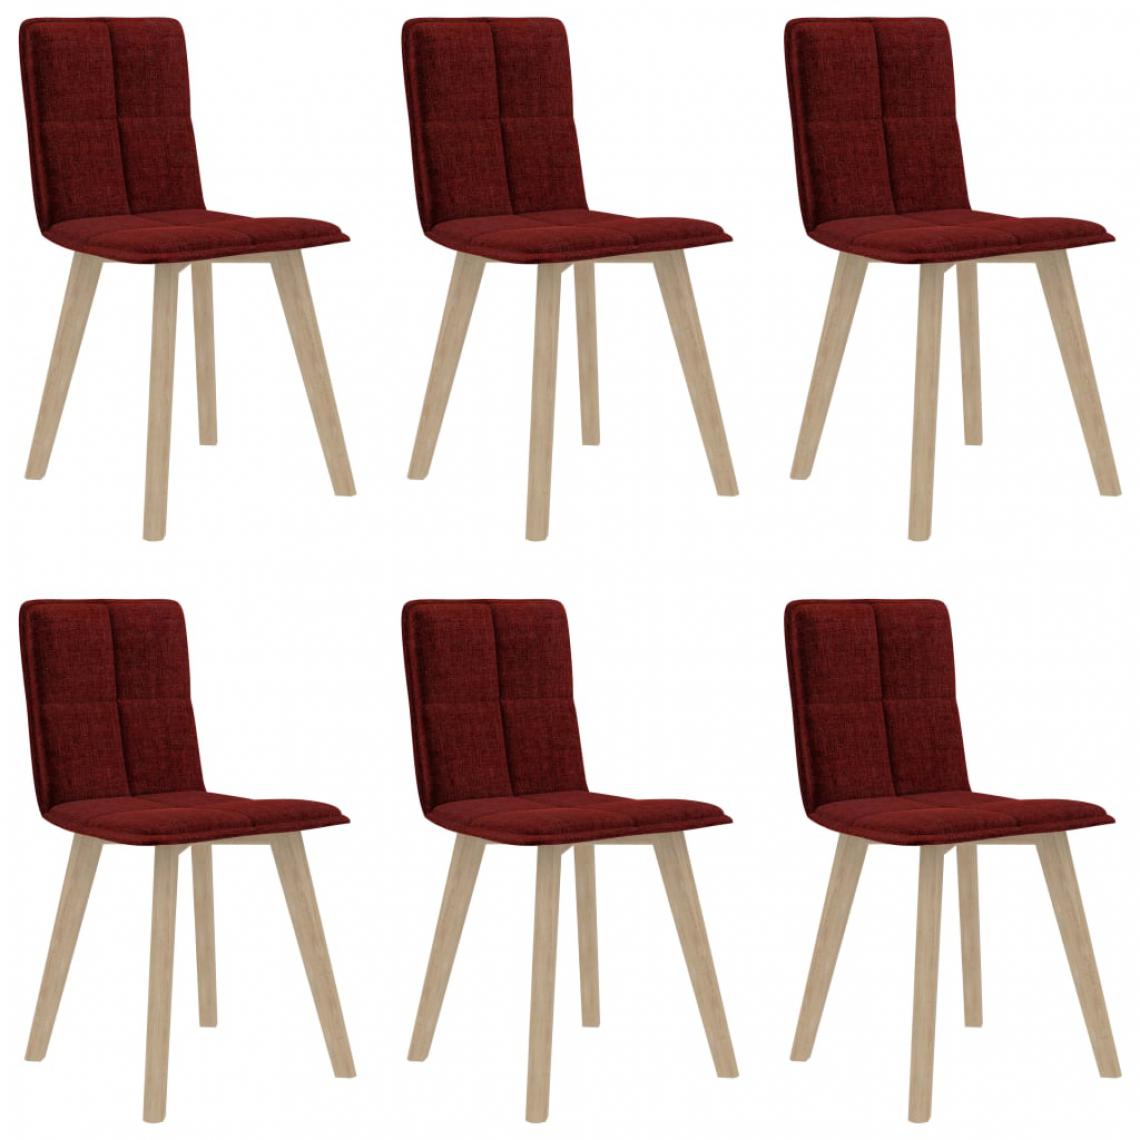 Icaverne - Moderne Fauteuils et chaises collection Quito Chaises de salle à manger 6 pcs Rouge bordeaux - Chaises